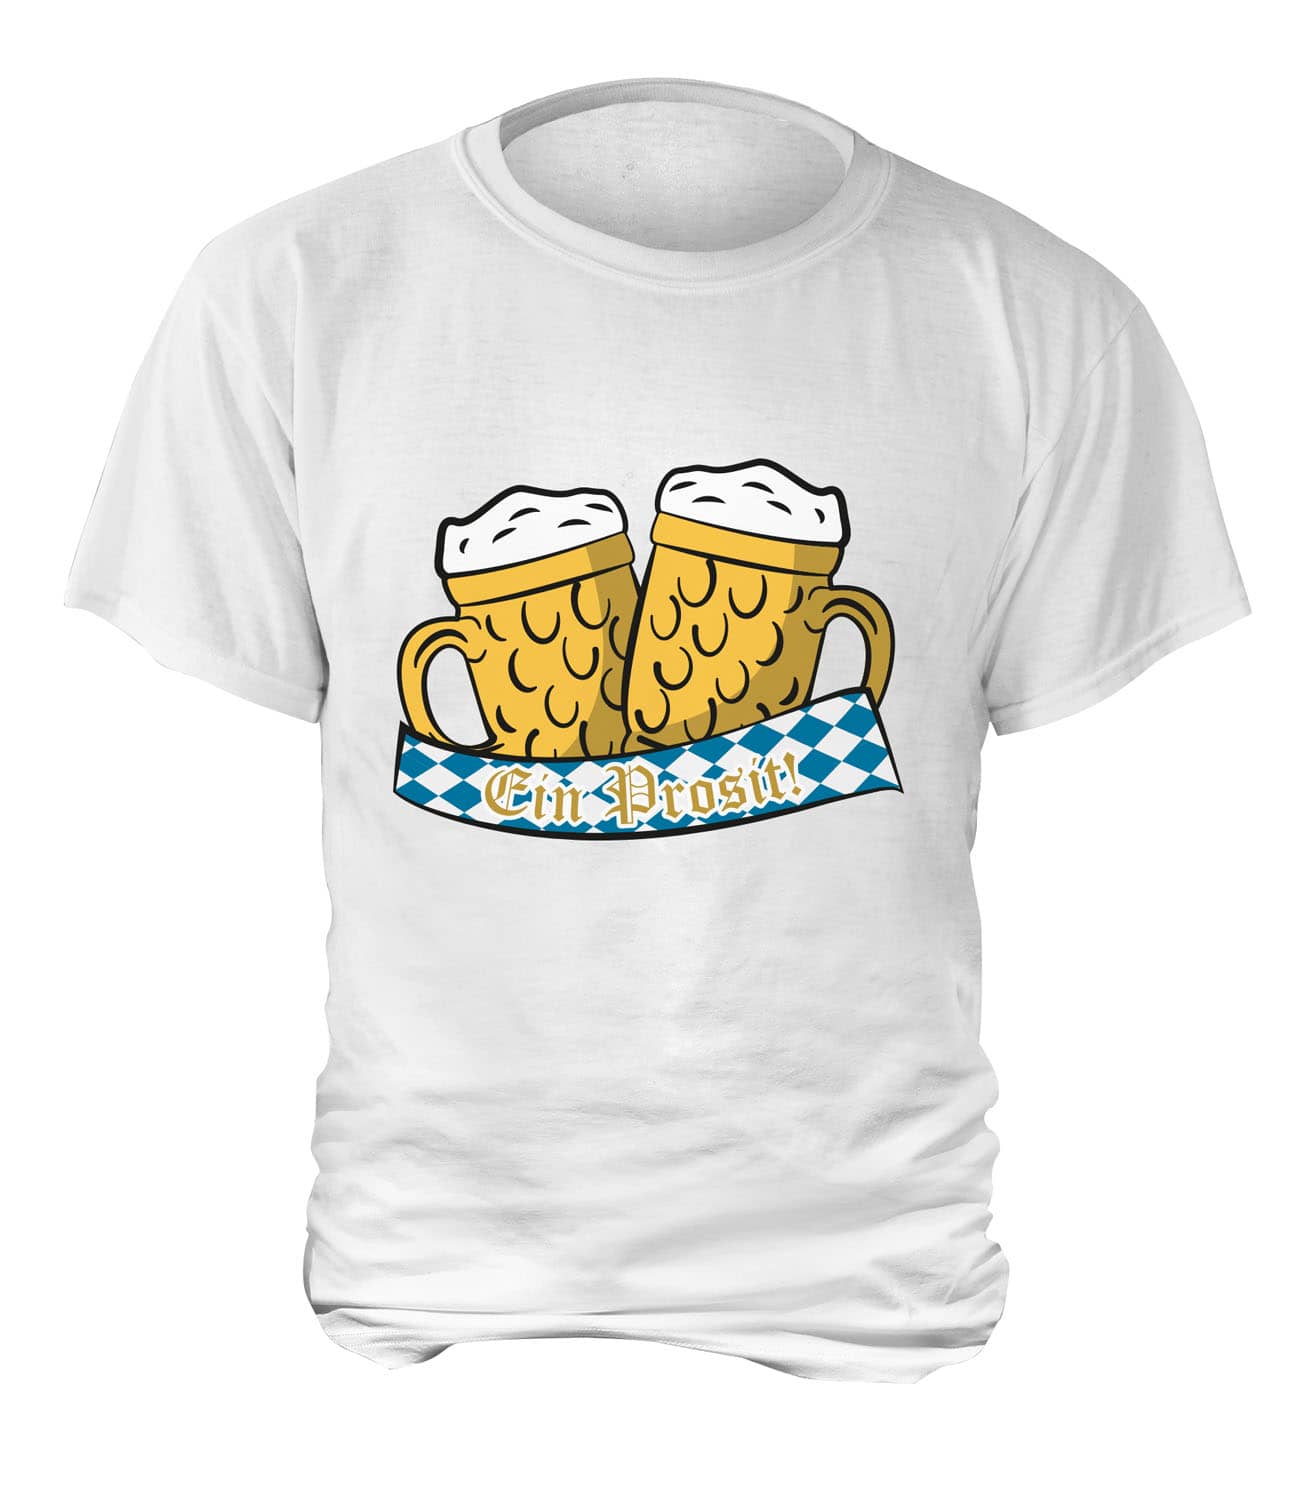 T-Shirt "Ein Prosit" - Herren